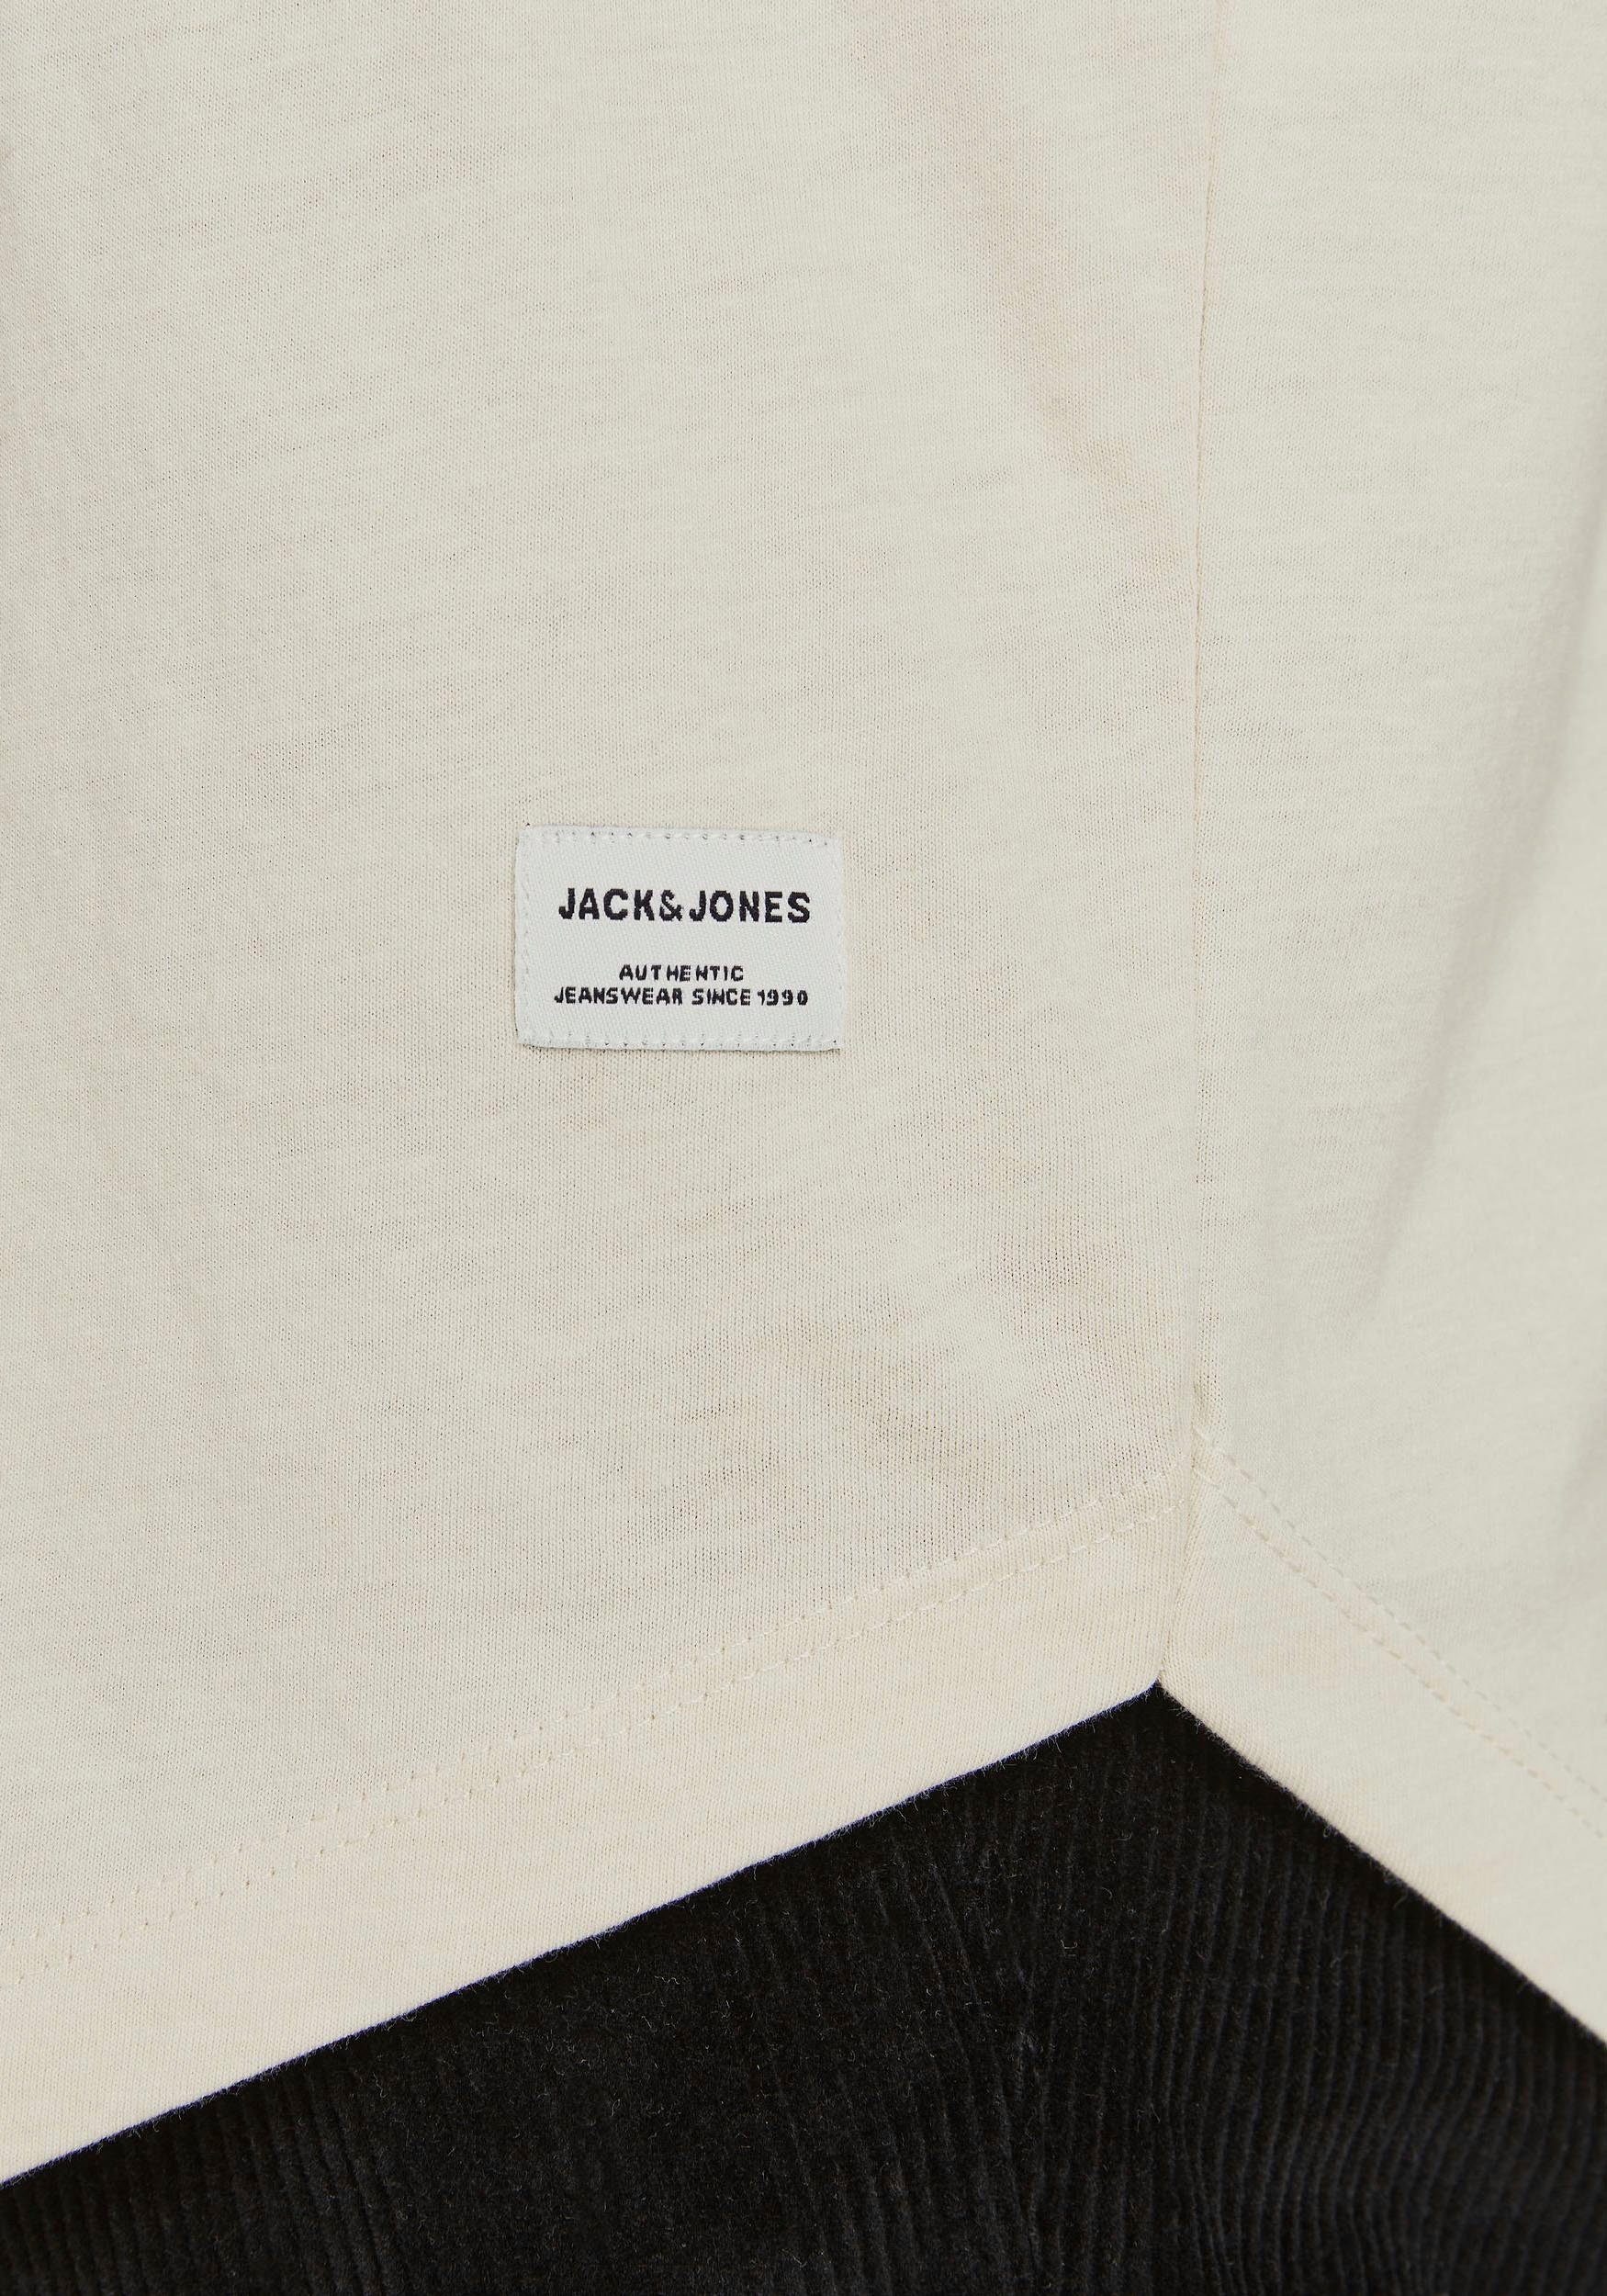 Jack & TEE NOA Jones T-Shirt hellbeige